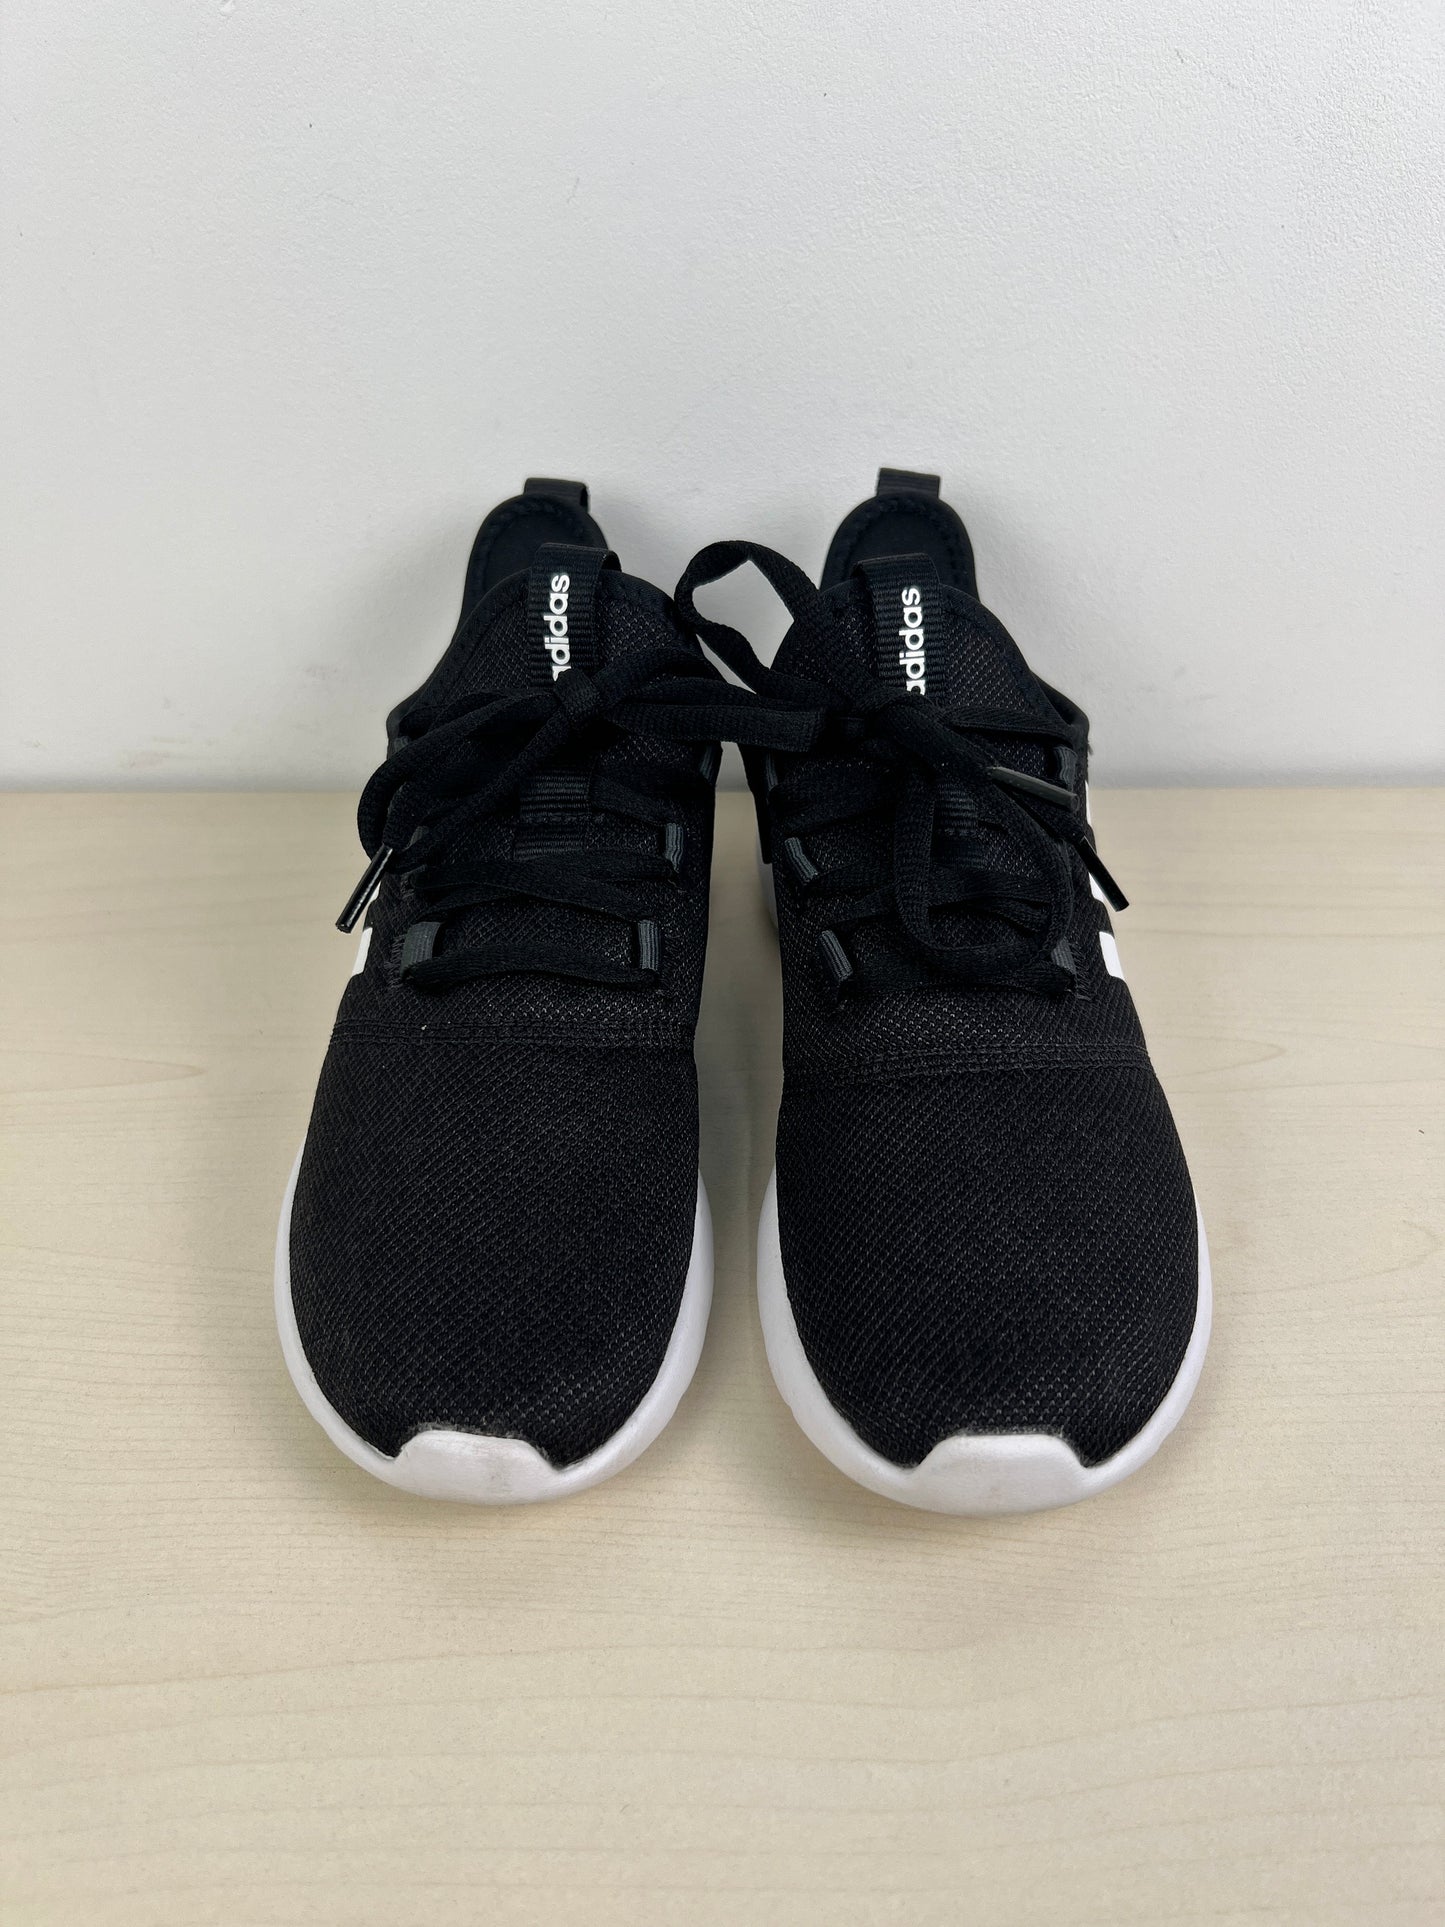 Black & White Shoes Athletic Adidas, Size 6.5